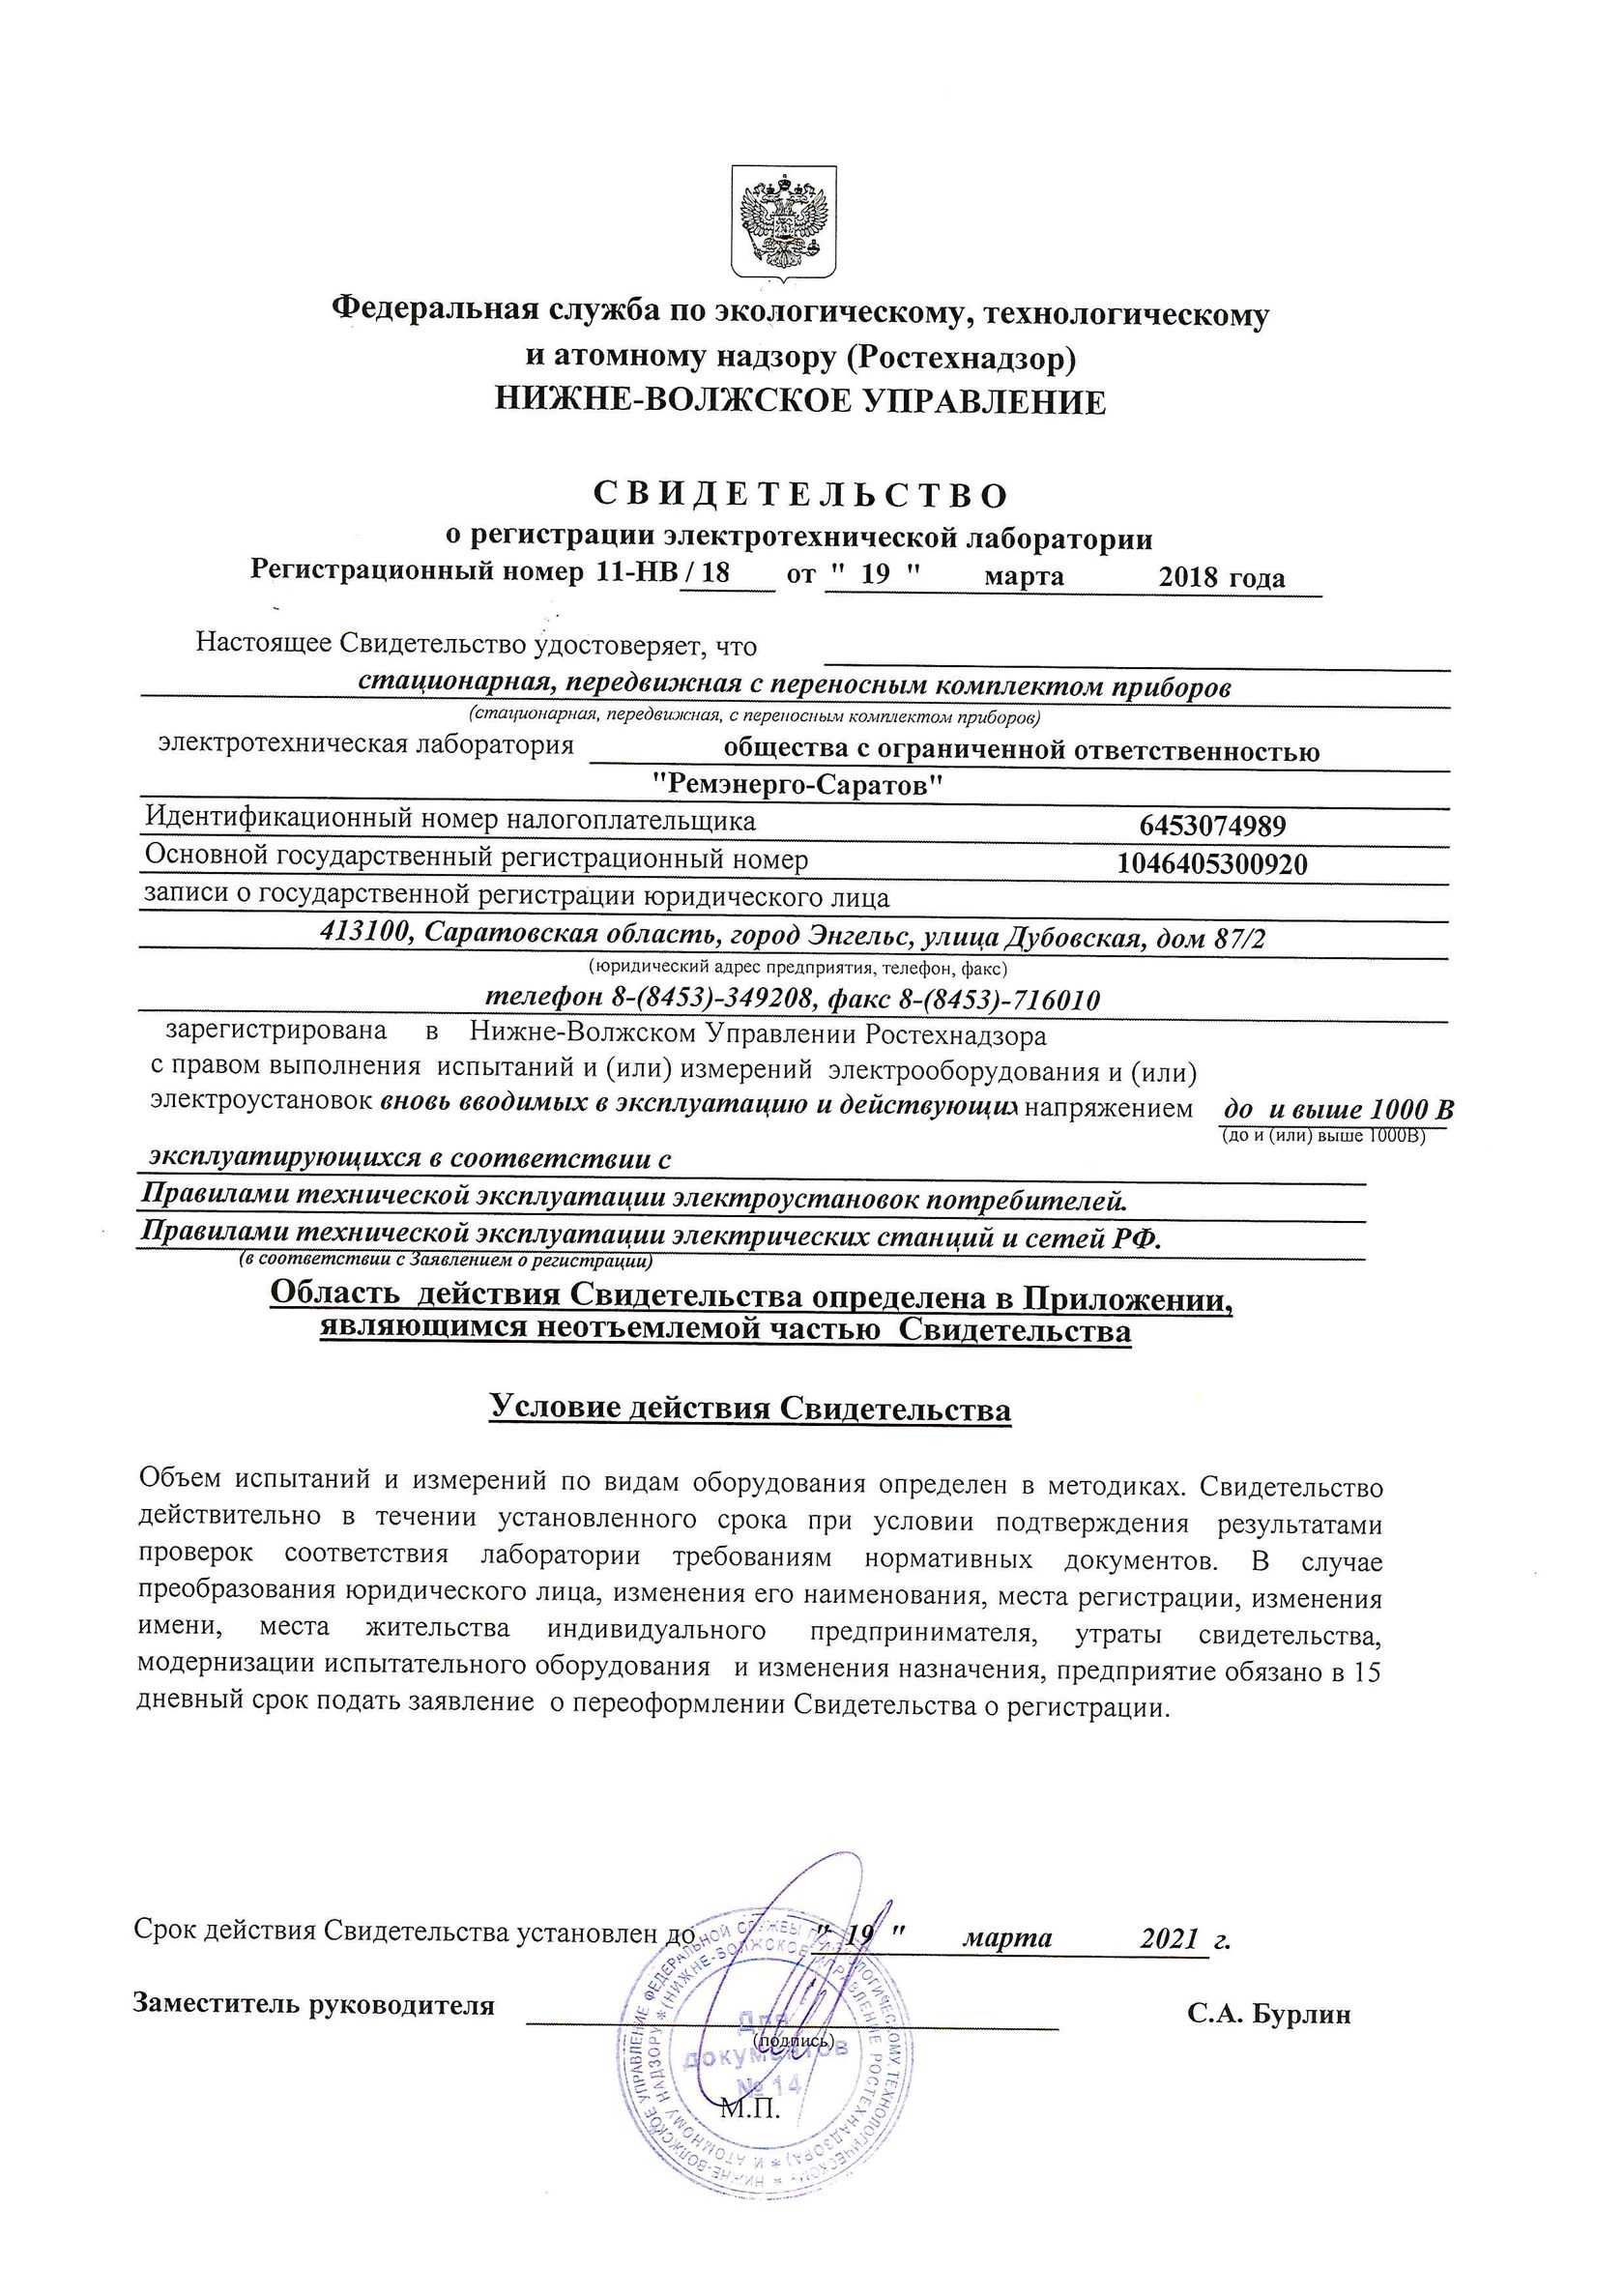 Регистрация электролаборатории в ростехнадзоре под ключ в москве - этл